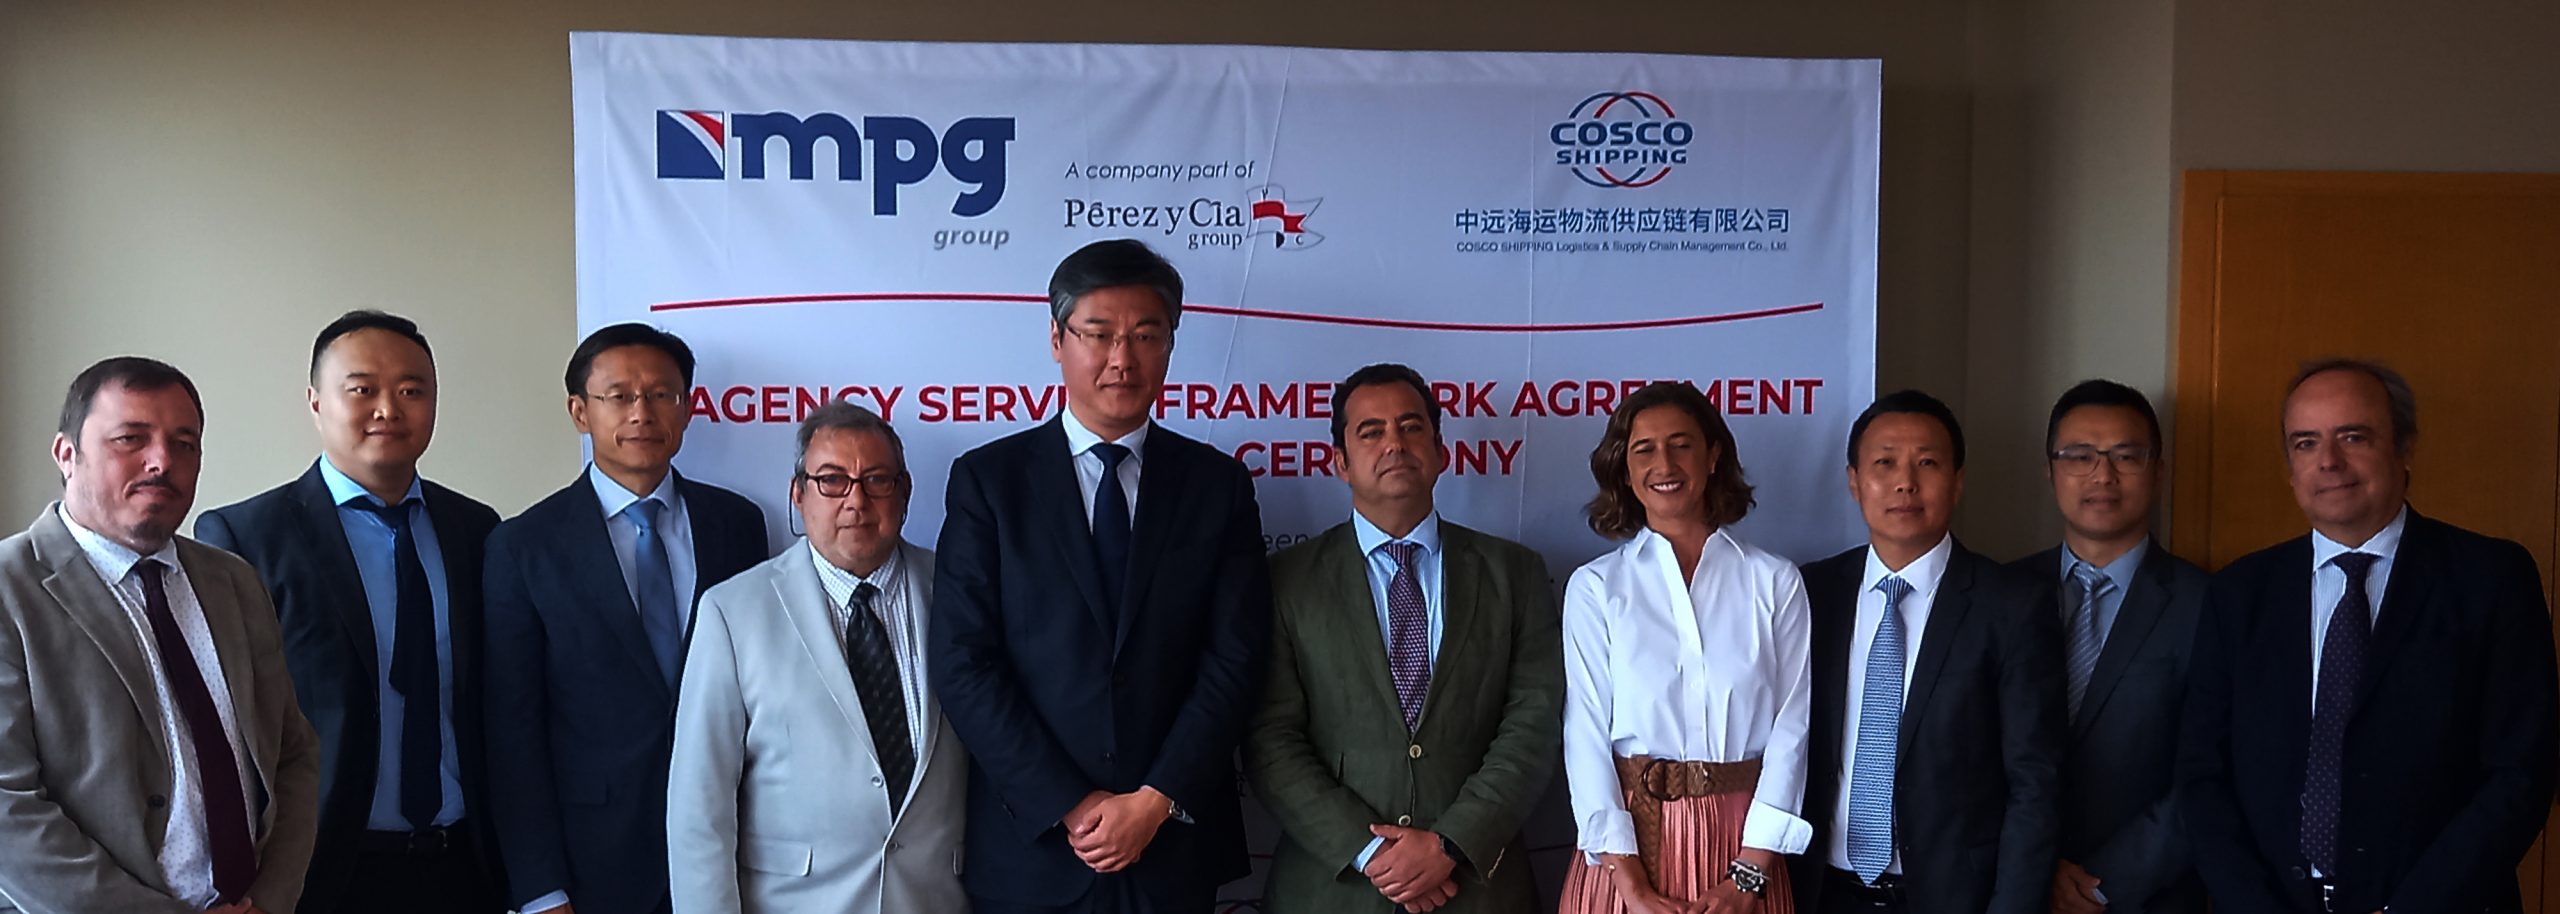 Acuerdo de Cooperación  entre MPG Group y COSCO Logistics